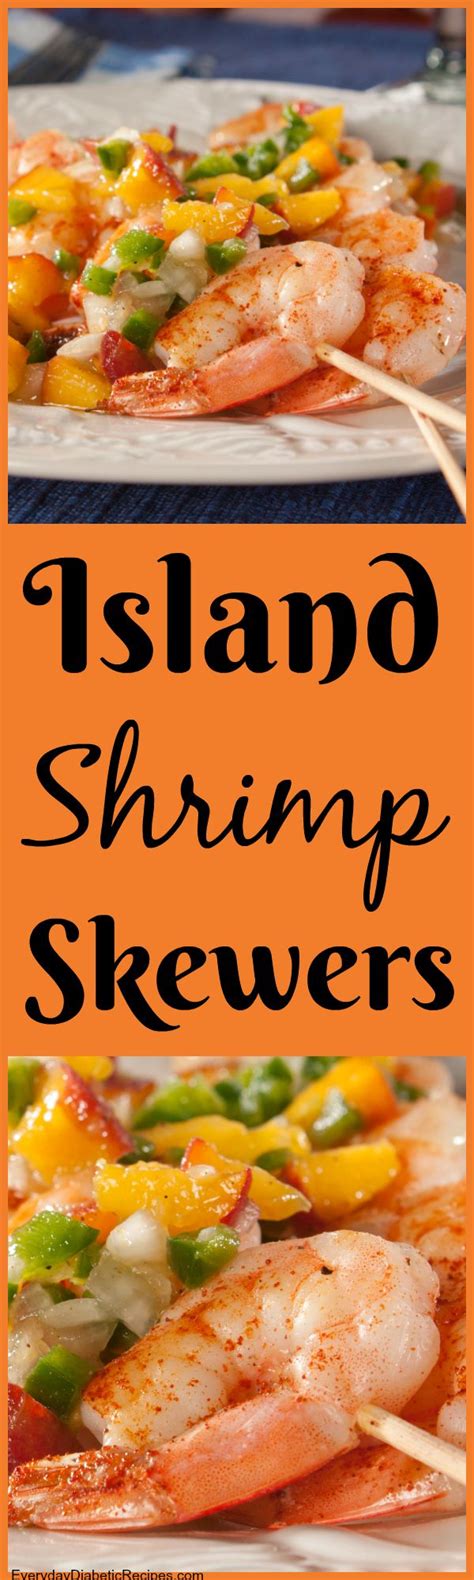 Diabetic recipes, 300 indian diabetic recipes. Island Shrimp Skewers | Recipe | Cooking recipes, Recipes ...